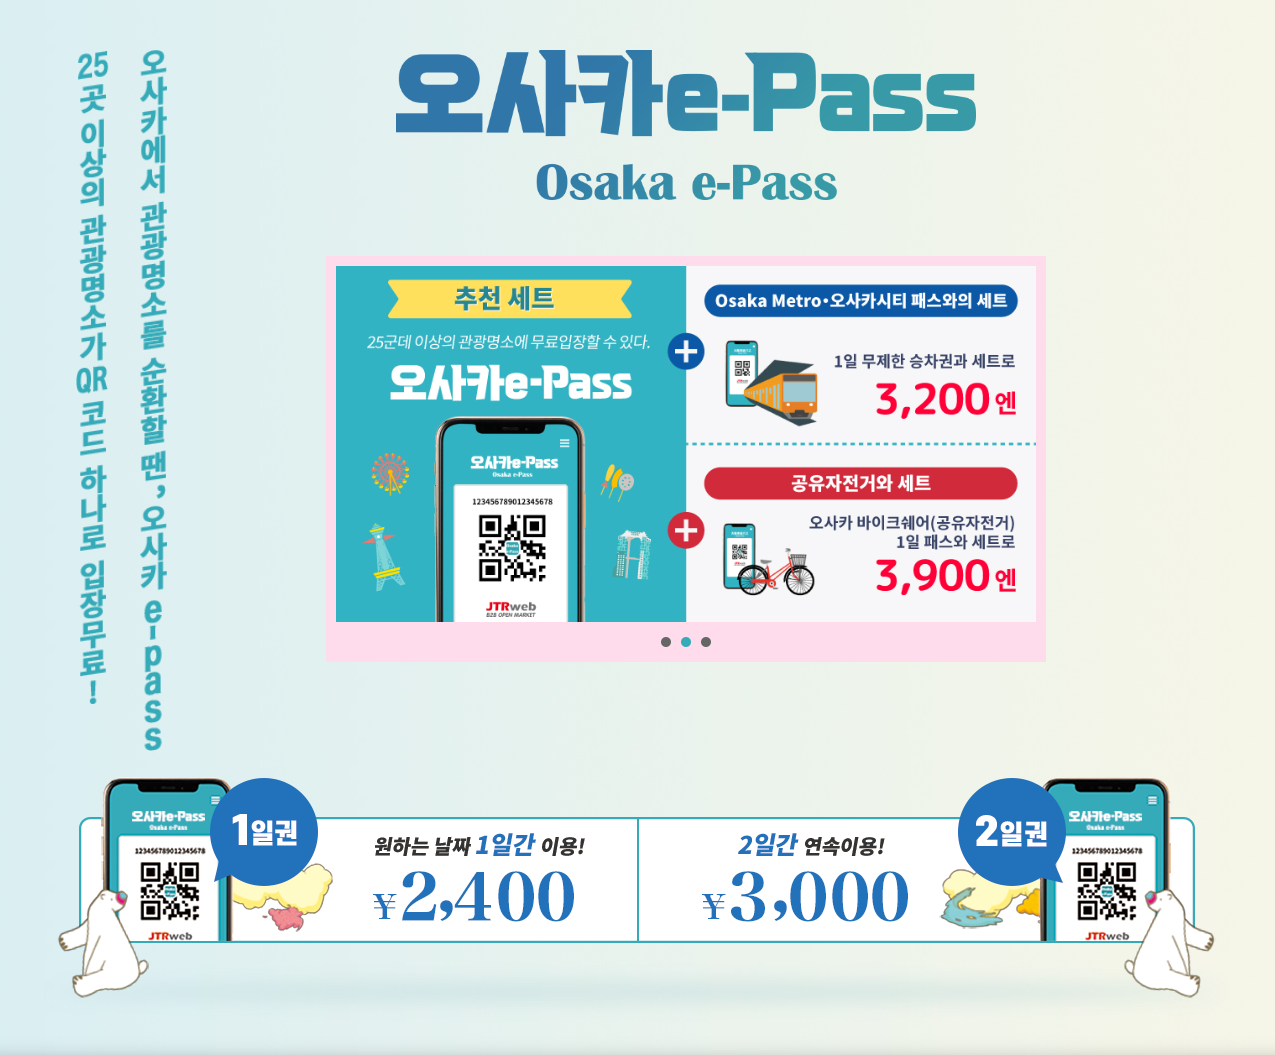 오사카 주유패스(E-패스) 4월부터 바뀐 개편 내용 정리 (가격/구매/관광지 등)